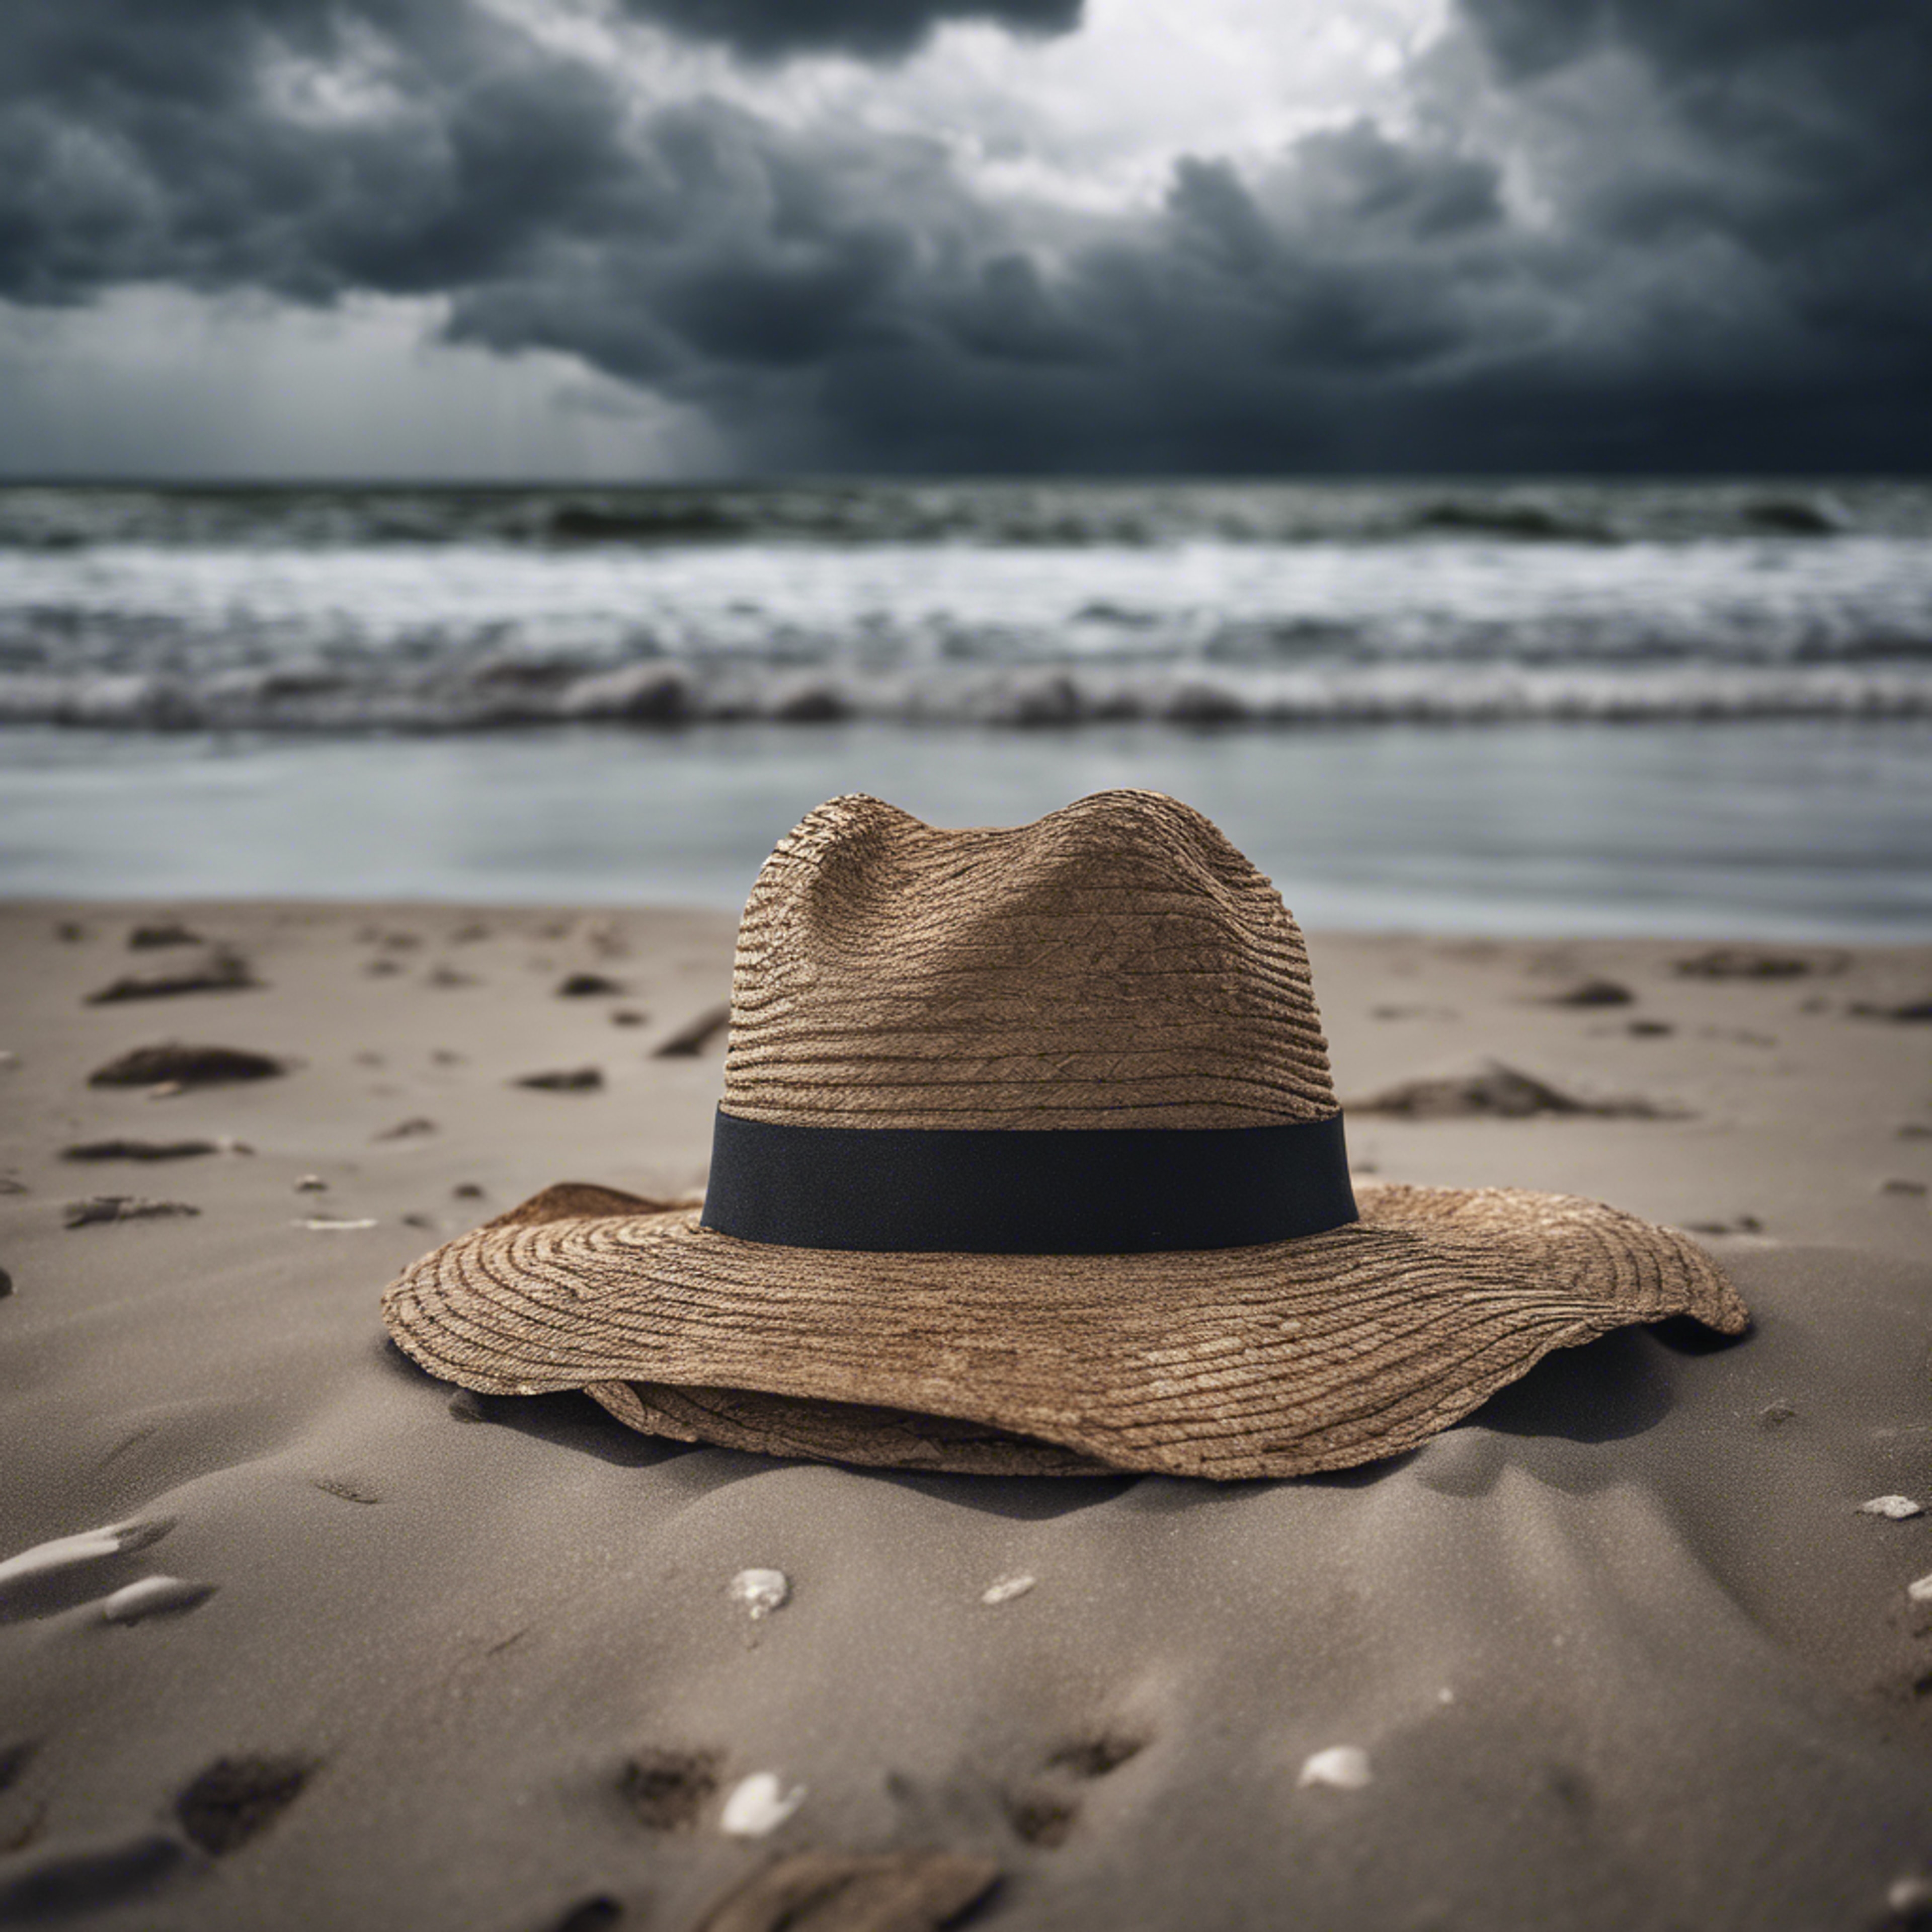 A single, forsaken hat blowing across a desolate beach under a stormy sky. Hintergrund[22c522374a7d402da3d5]